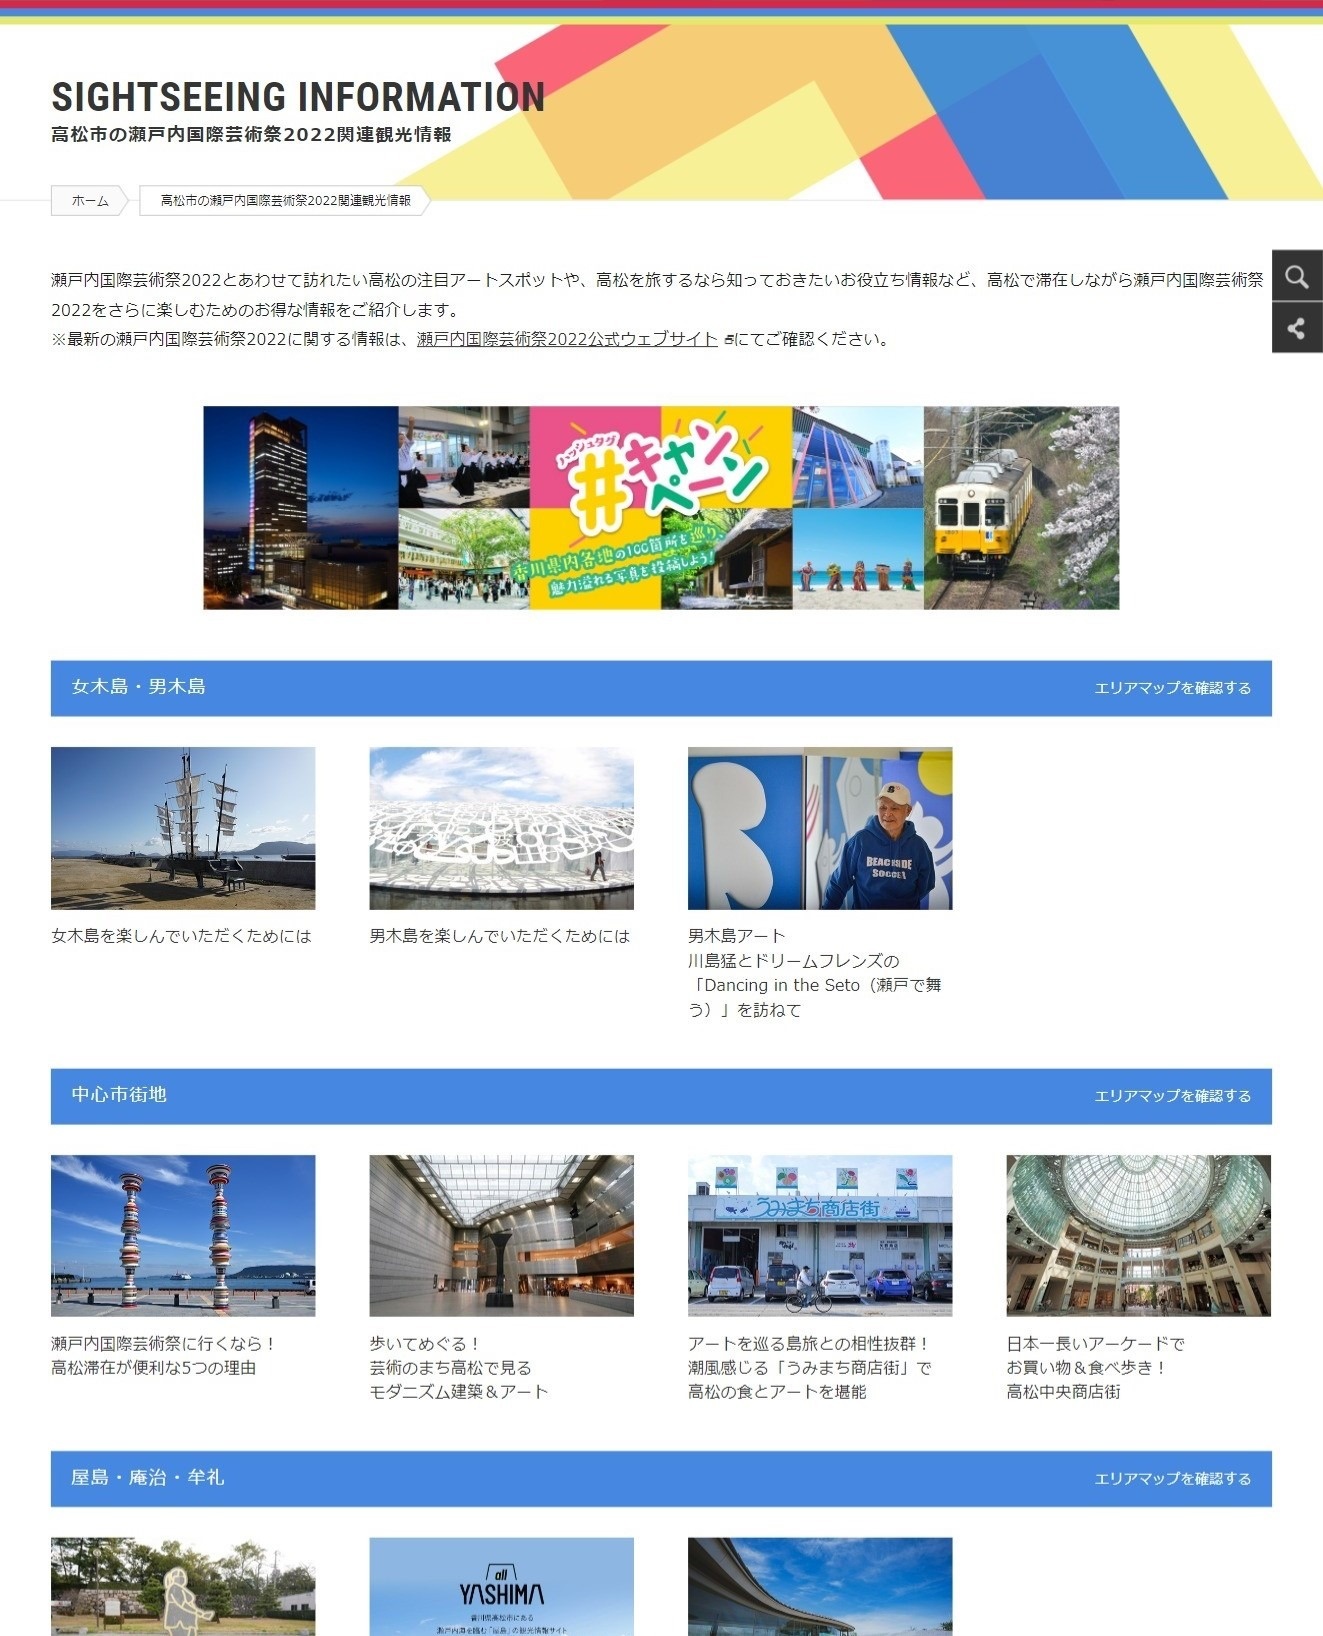 高松市公式観光サイト「エクスペリエンス高松」瀬戸内国際芸術祭 関連観光情報